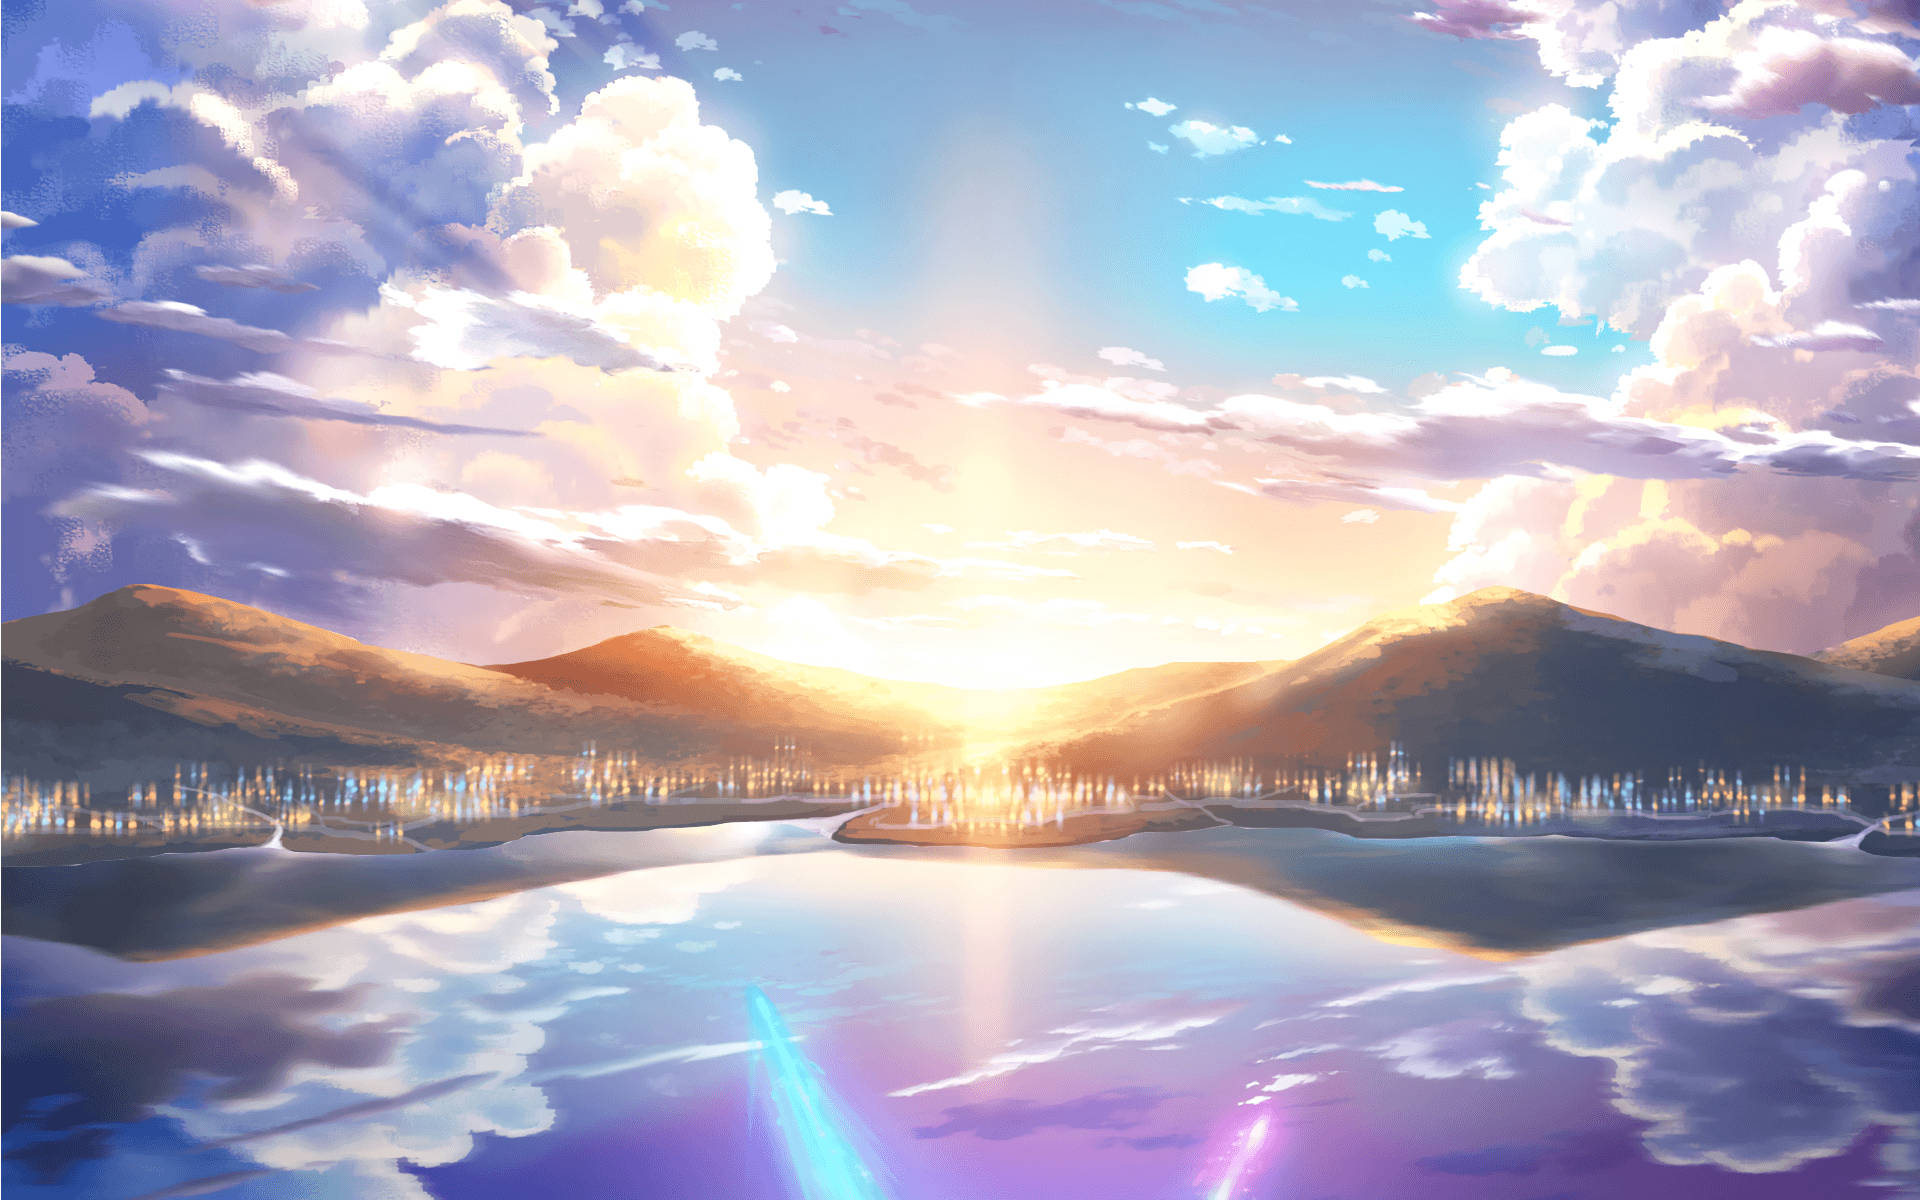 Anime Landscape Sunrise On Mountains Background